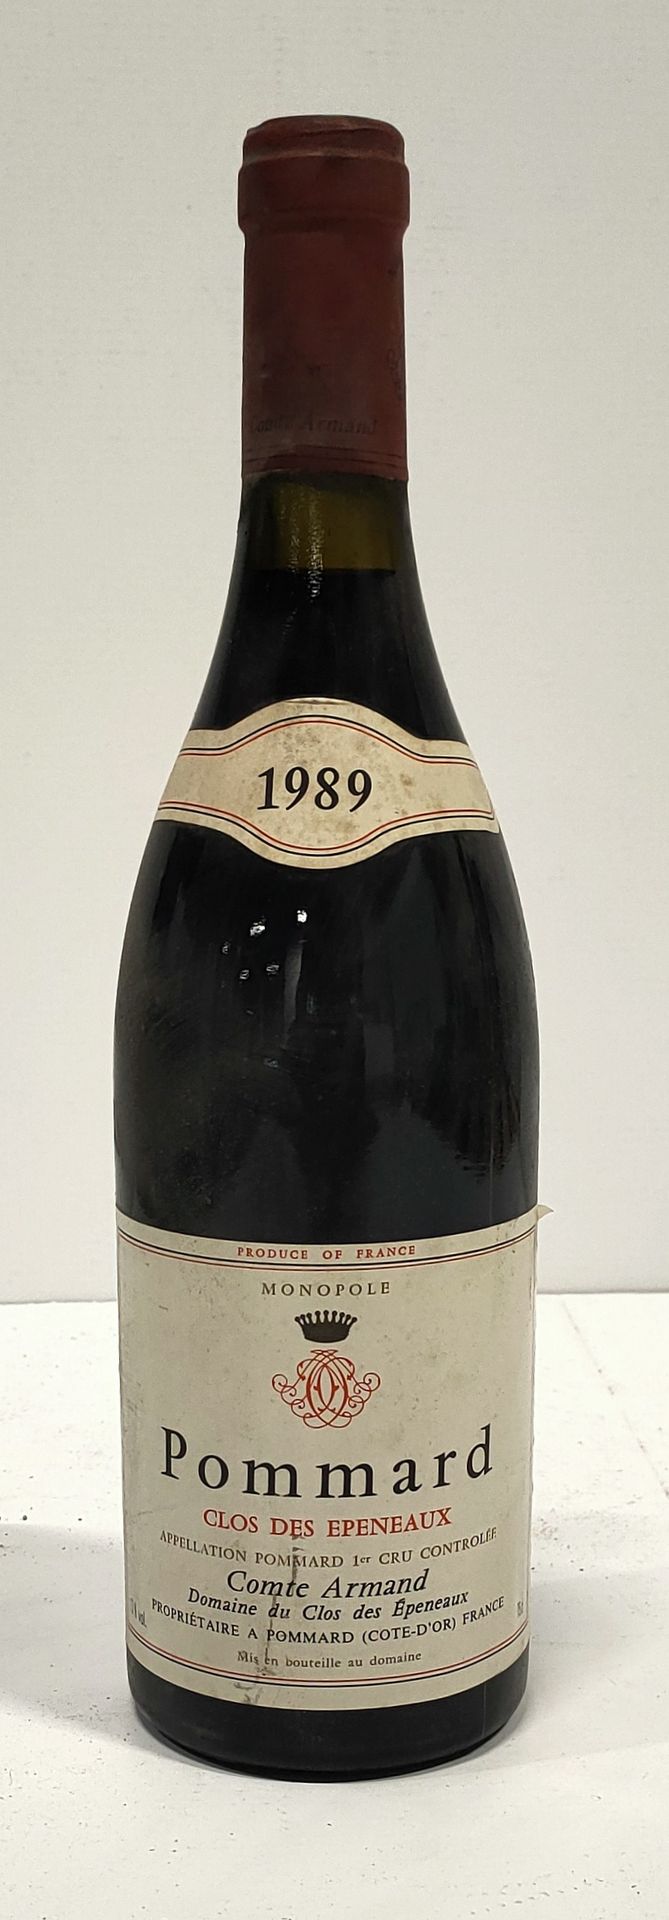 Null 1 bottiglia

POMMARD 1er Cru " Clos des Epeneaux " - Conte

Armand

1989

E&hellip;